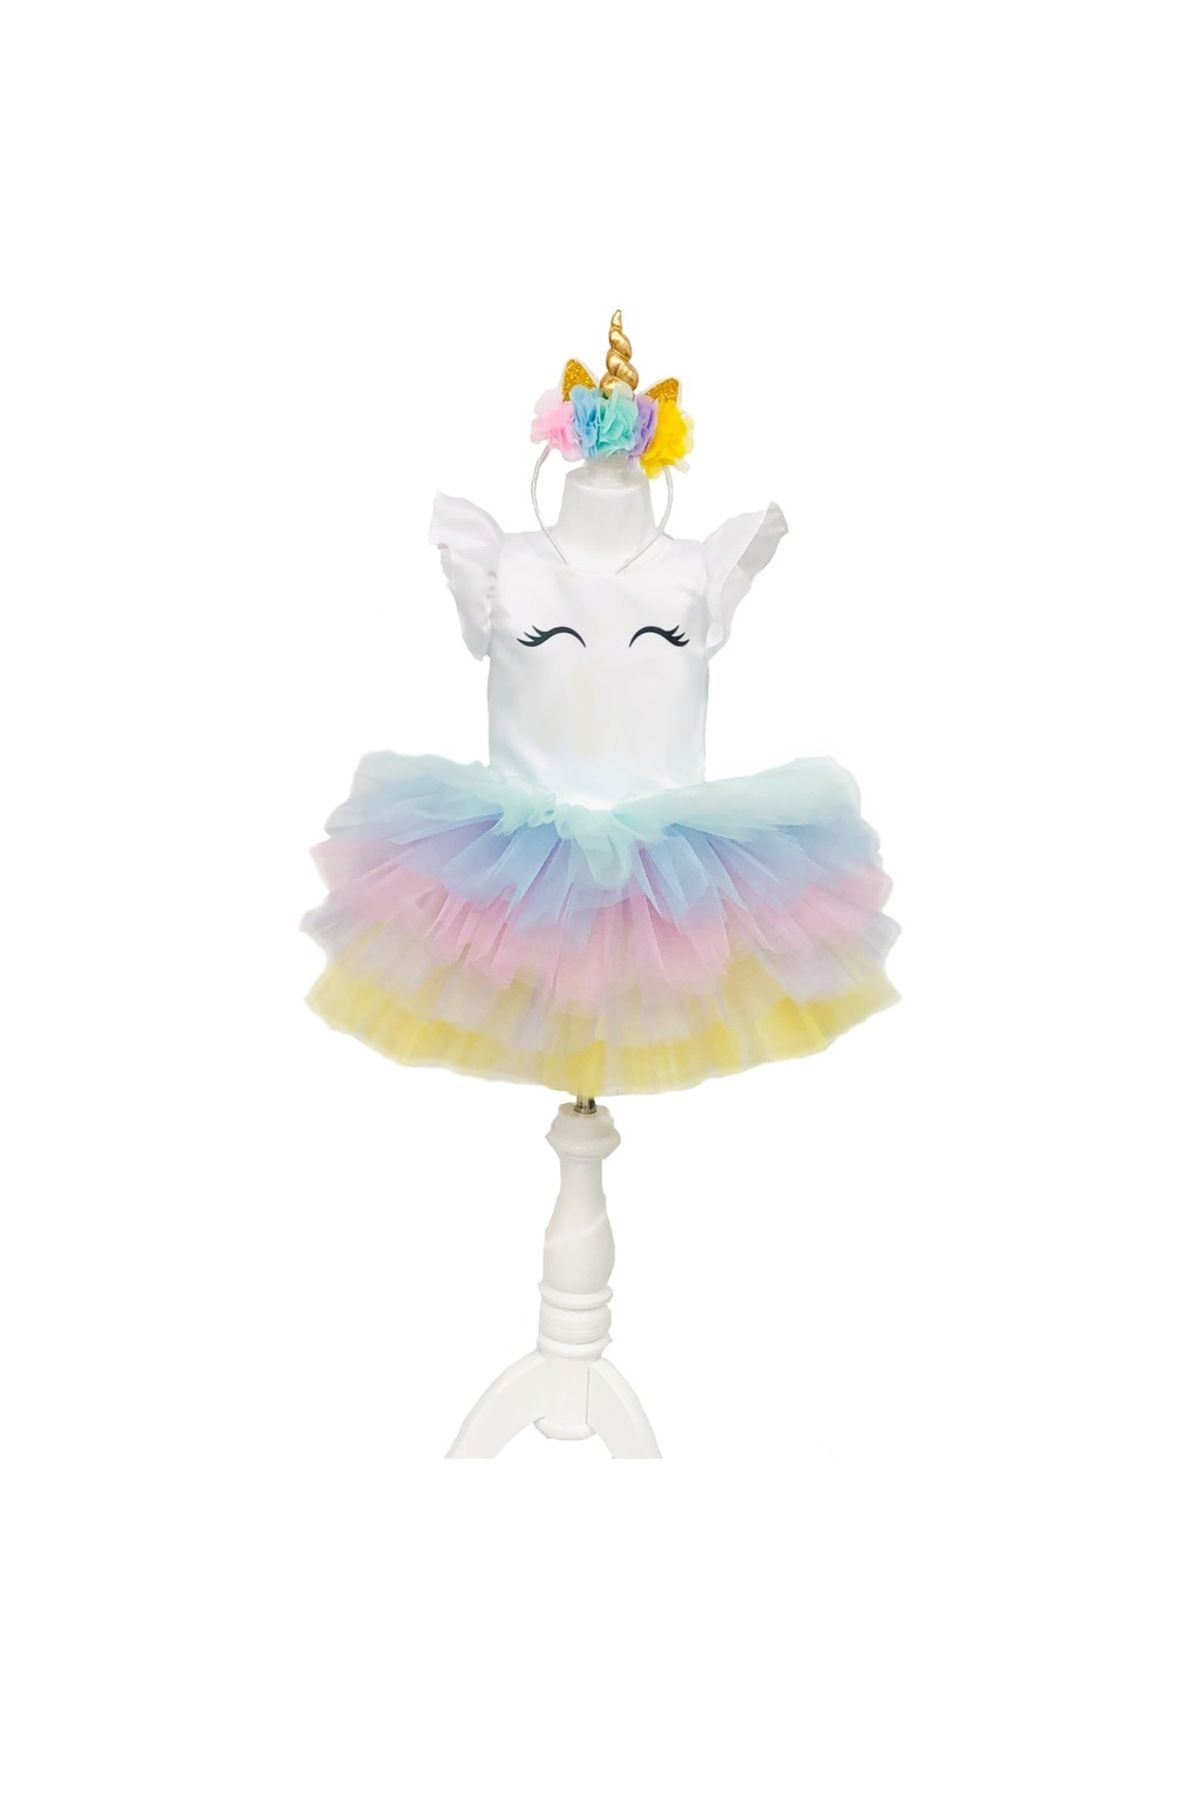 YAĞMUR KOStütüM Unicorn Model Kız Çocuk Bebek Abiye Elbise Kostüm